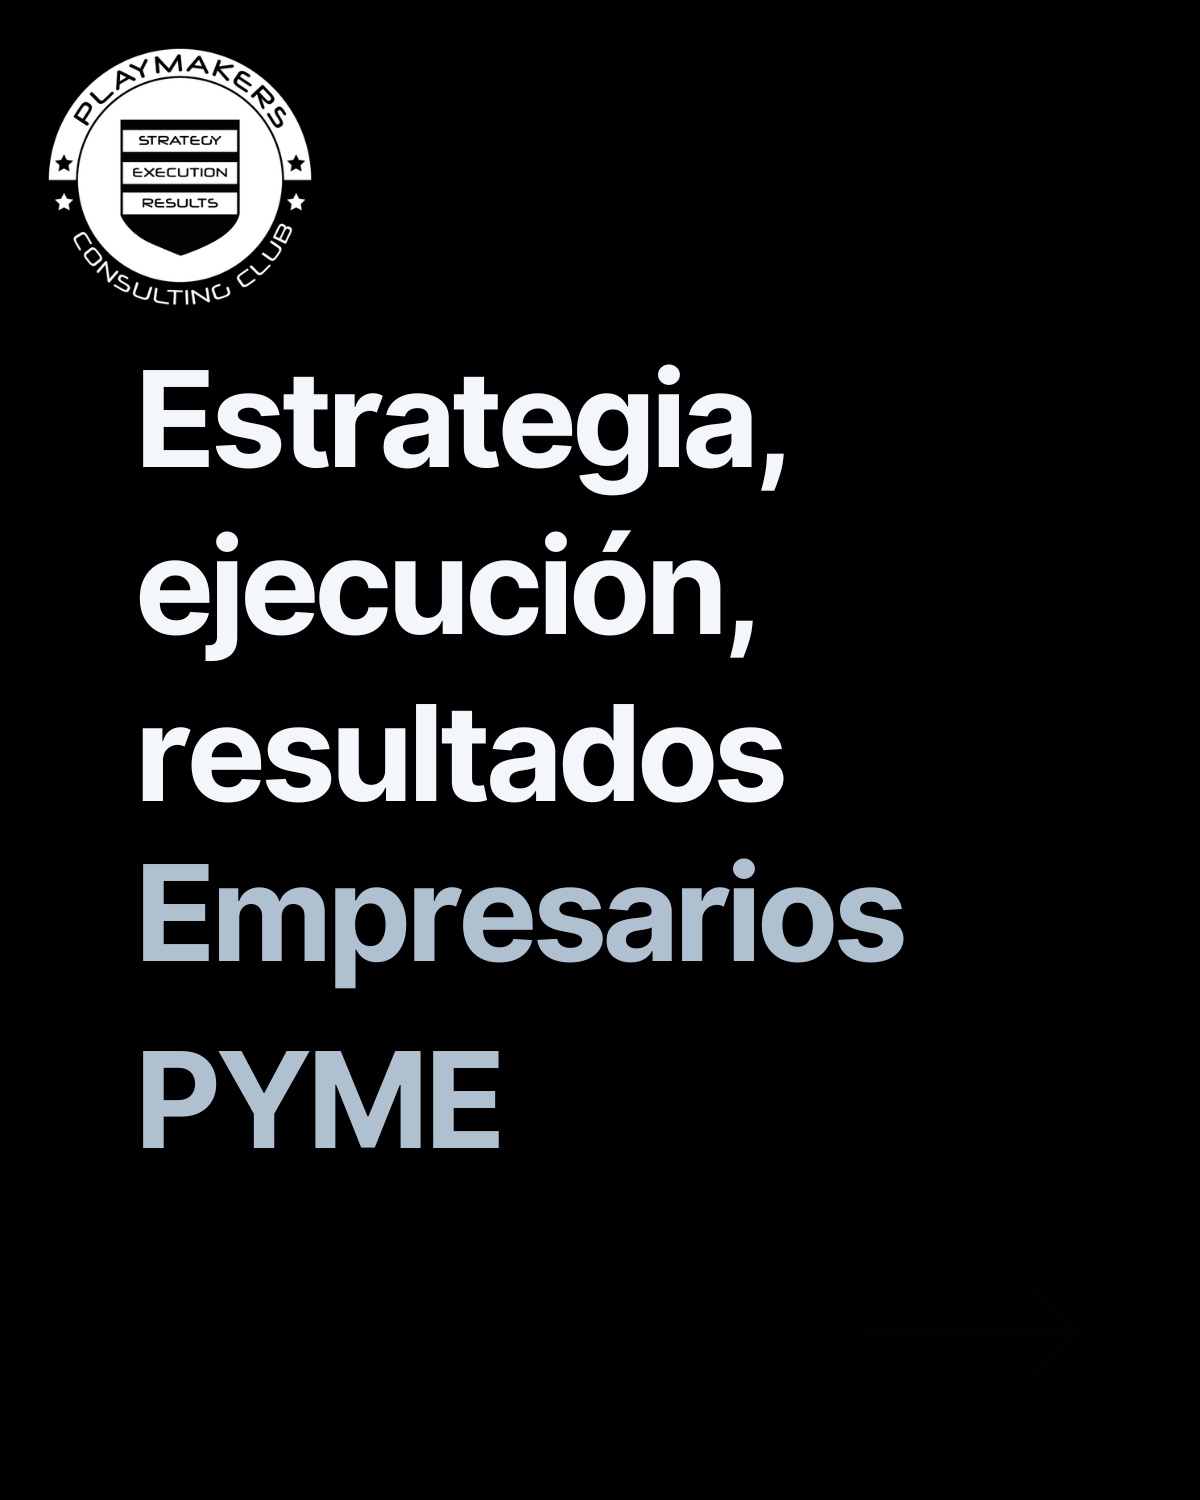 Estrategia, ejecución, resultados para los empresarios pyme en España